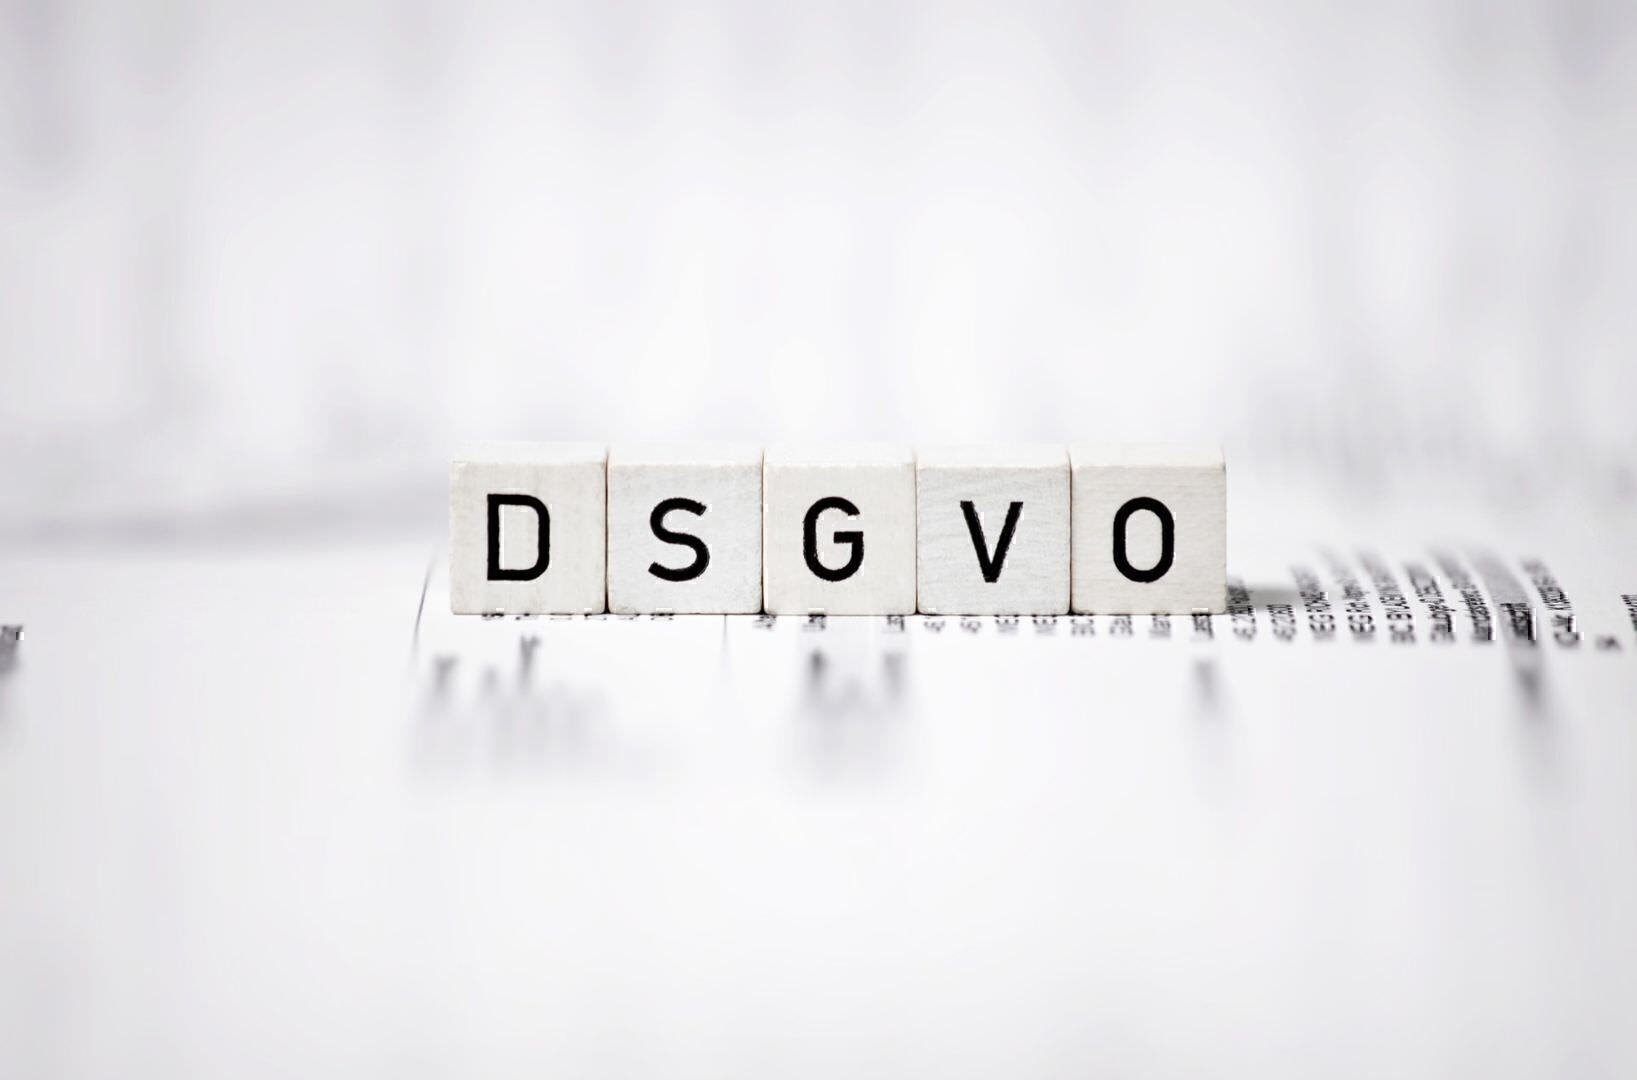 DSGVO als Buchstaben auf Würfel gedruckt liegen auf Papier